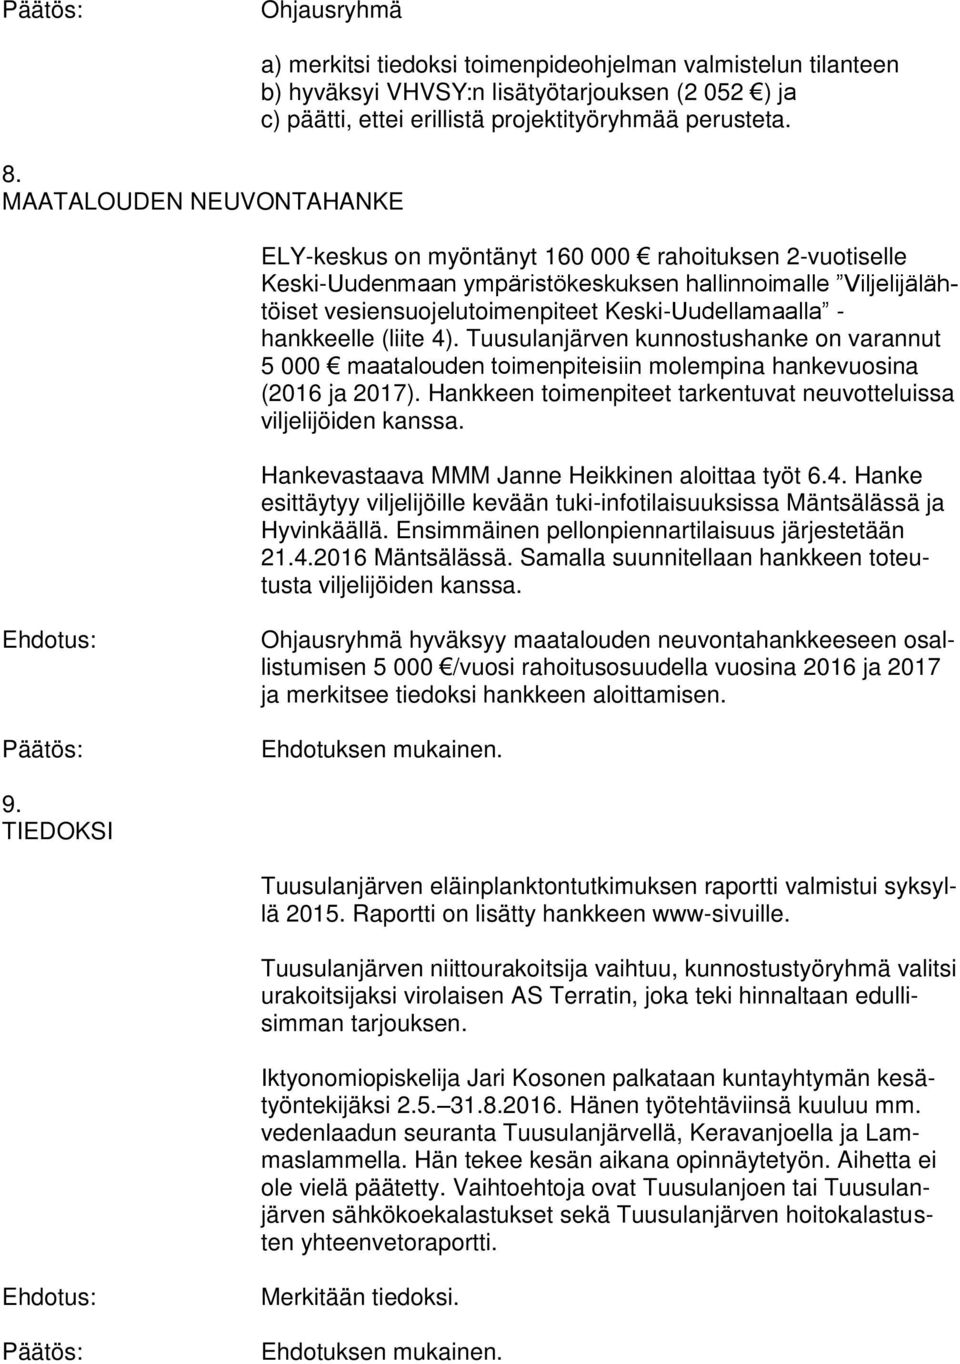 ELY-keskus on myöntänyt 160 000 rahoituksen 2-vuotiselle Keski-Uudenmaan ympäristökeskuksen hallinnoimalle Viljelijälähtöiset vesiensuojelutoimenpiteet Keski-Uudellamaalla - hankkeelle (liite 4).